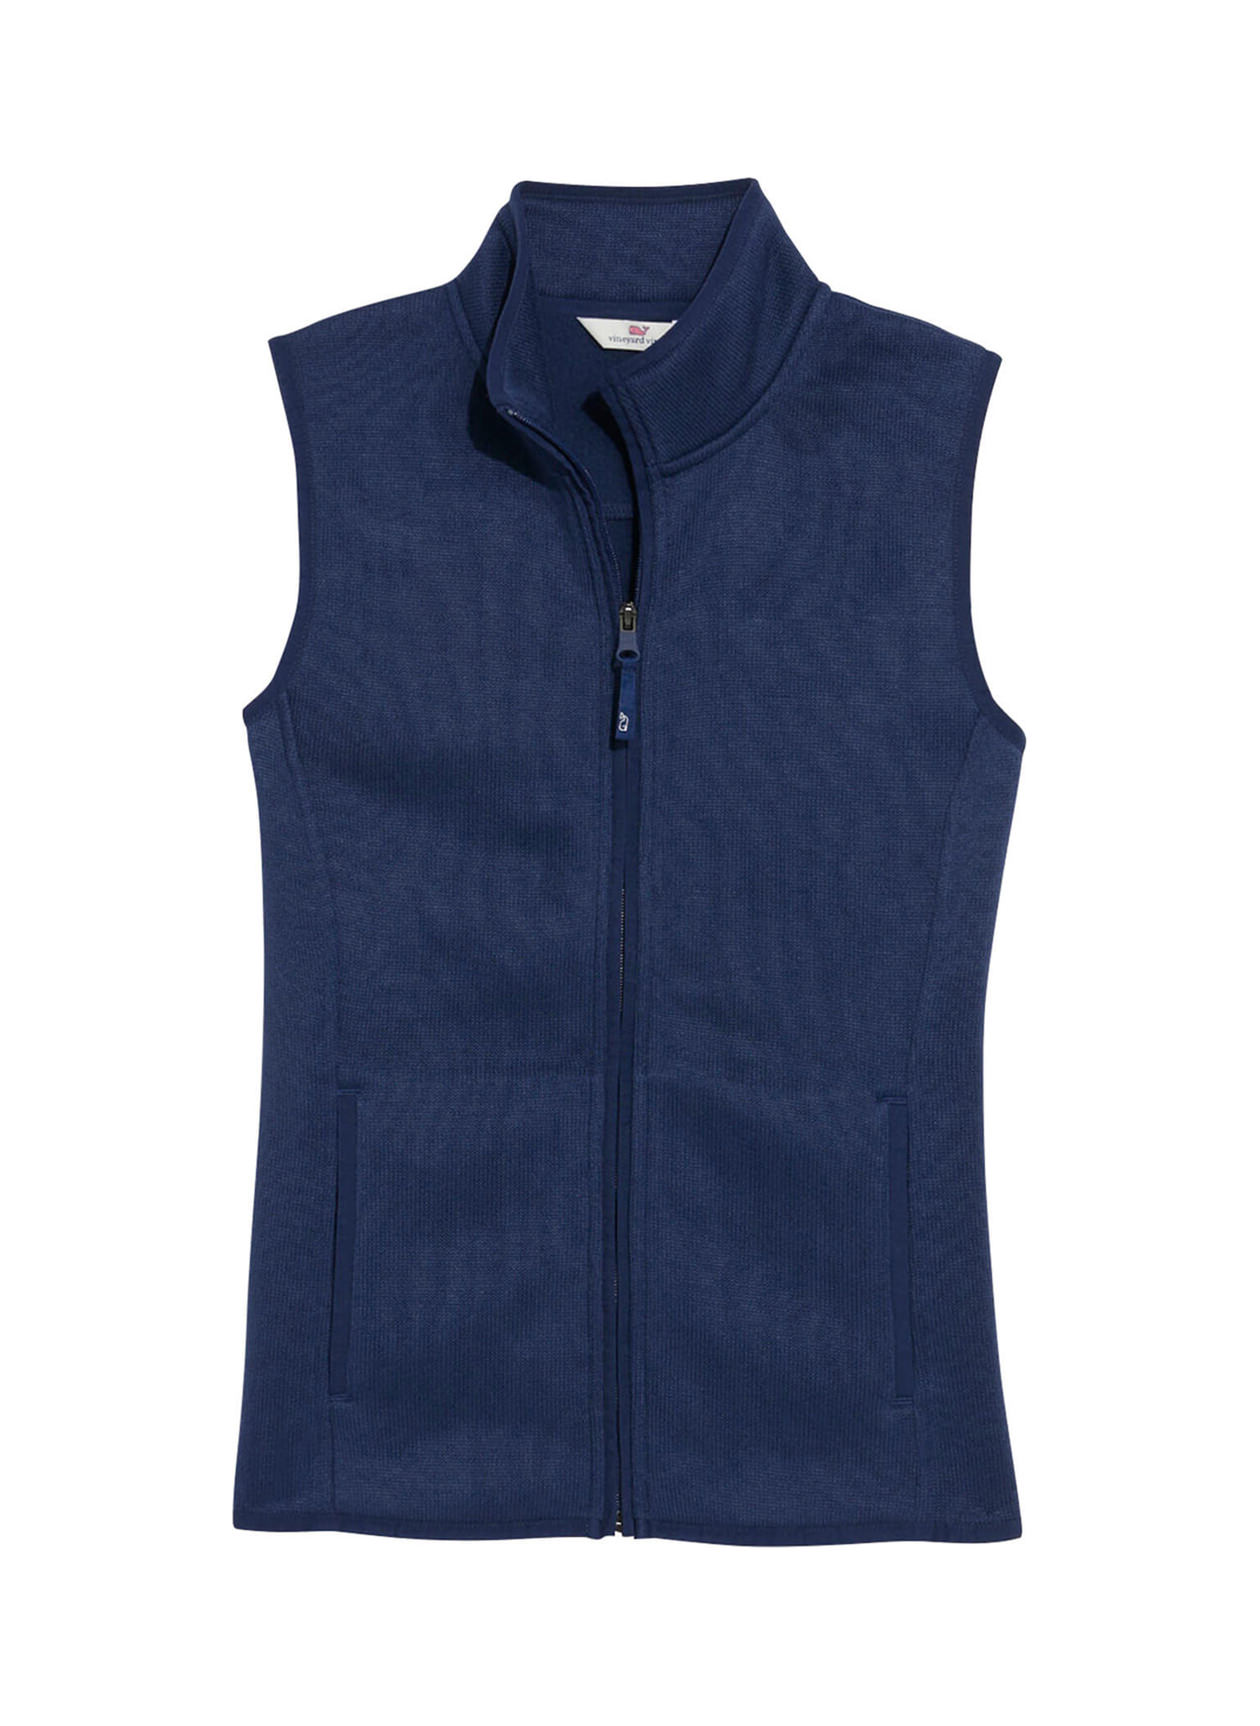 Vineyard Vines Women's Deep Bay Sweater Fleece Vest | Custom Vests